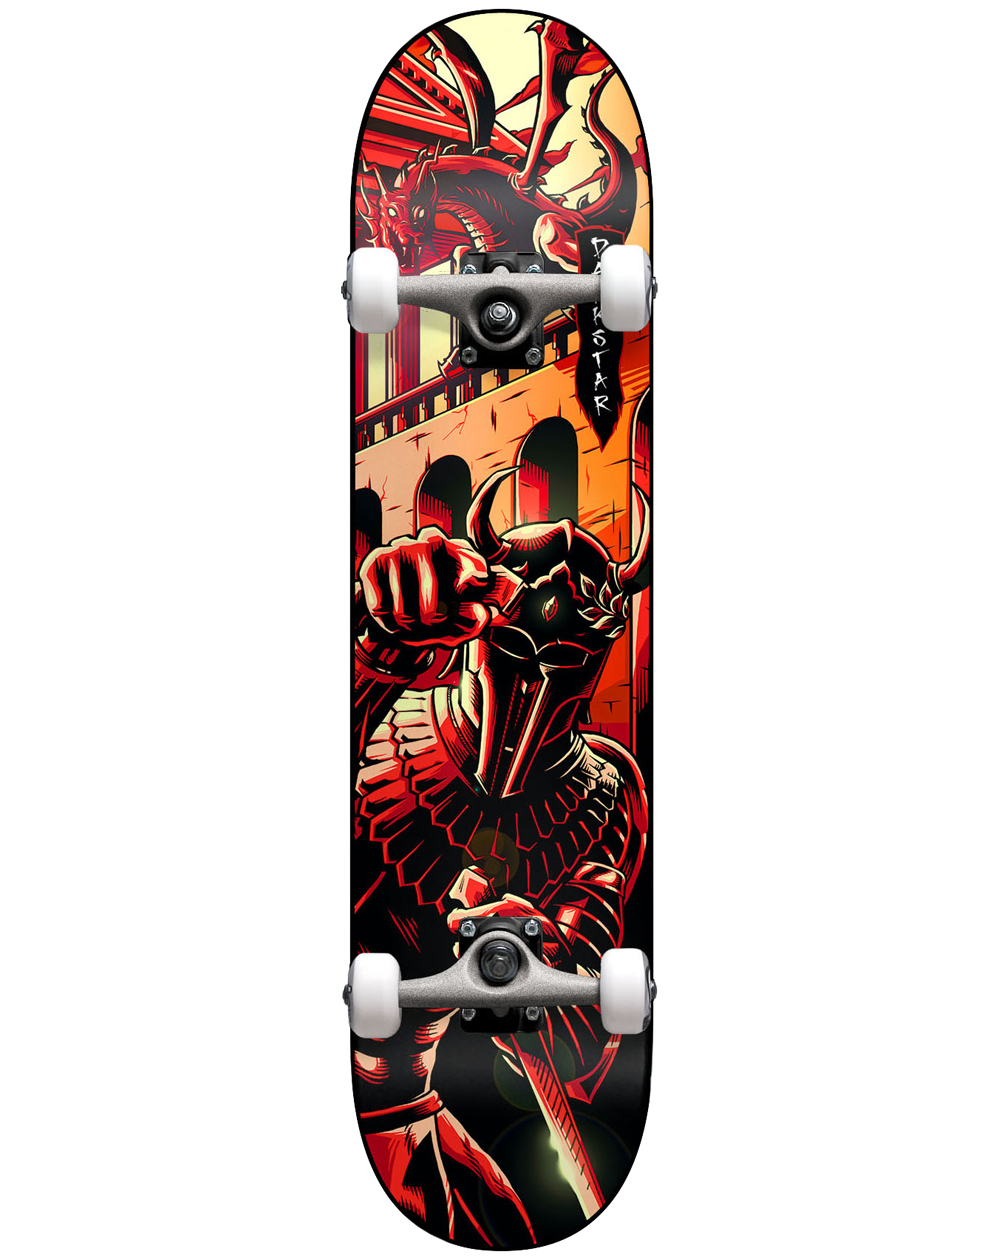 Darkstar Inception Dragon 8.125" Komplett-Skateboard Red